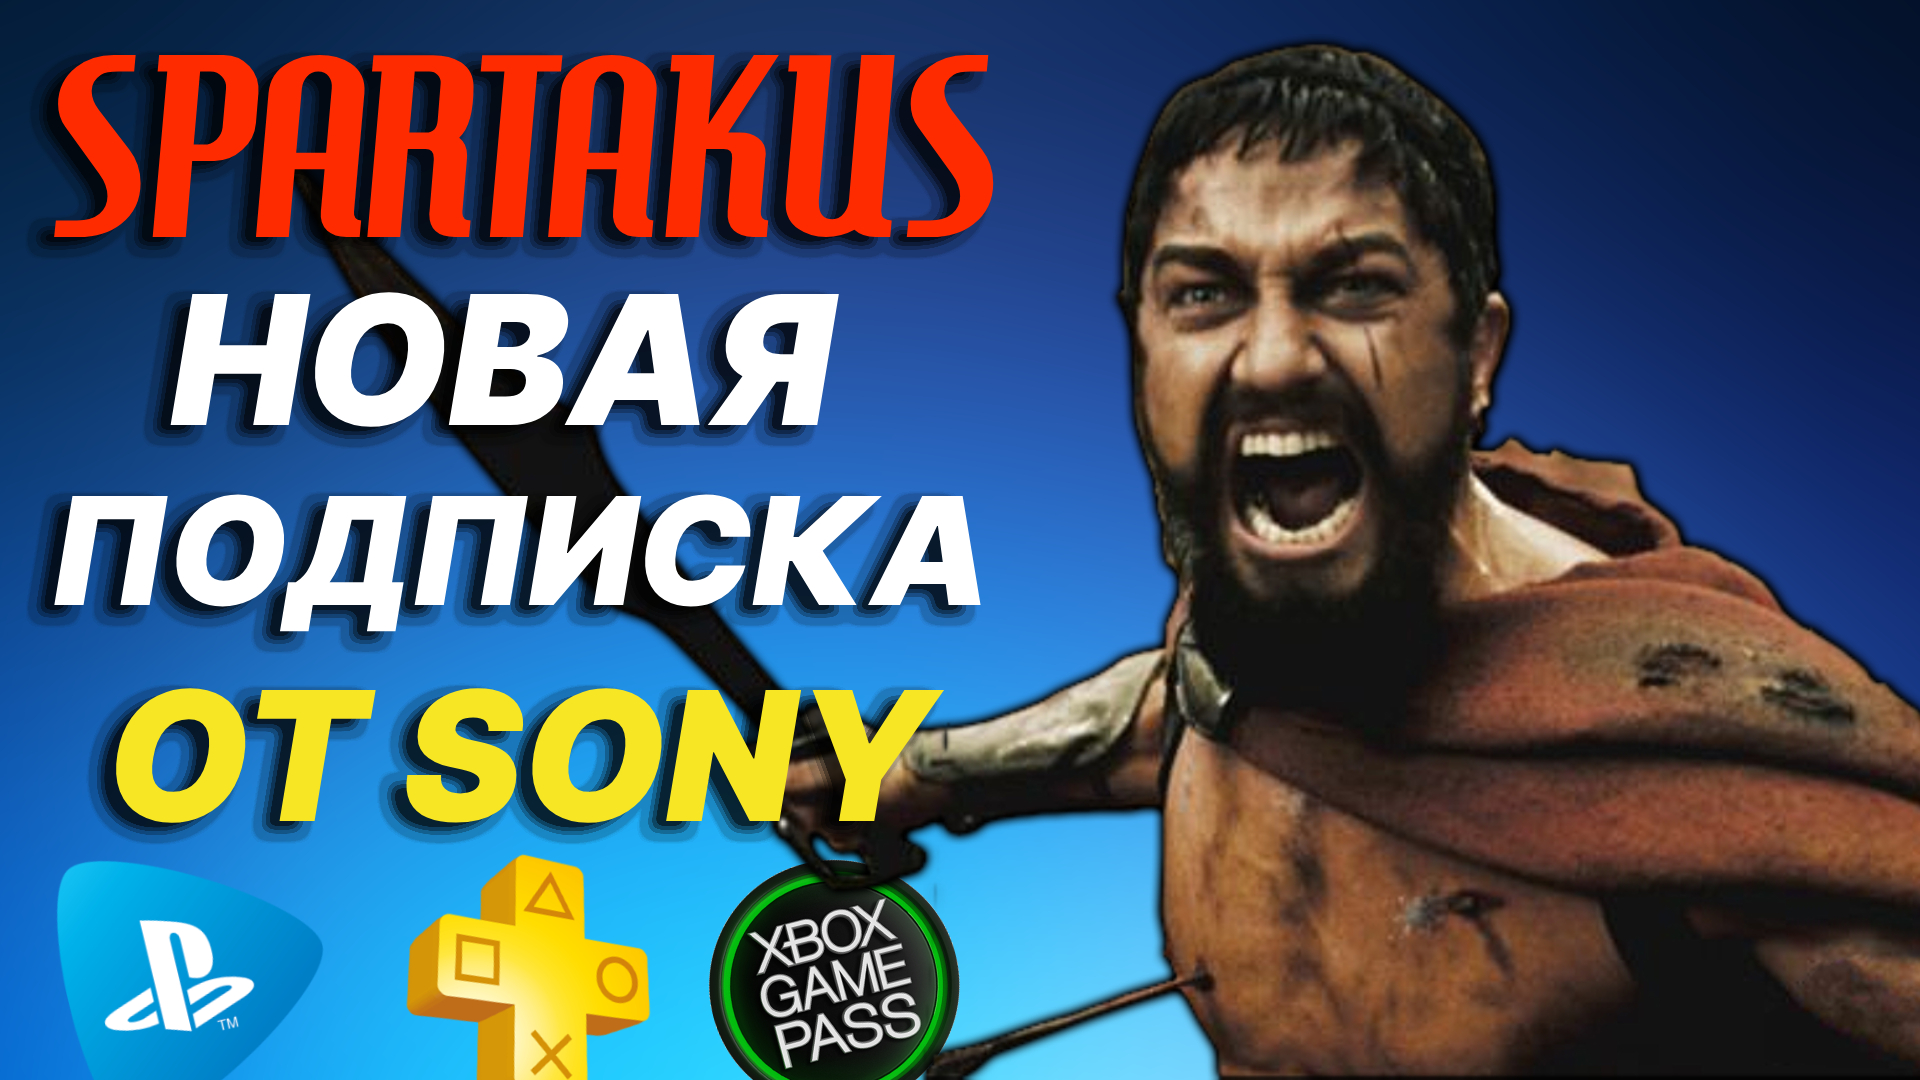 Новая подписка от Sony "SPARTAKUS". Сколько будет стоить? Это аналог xbox game pass? PS Now в России